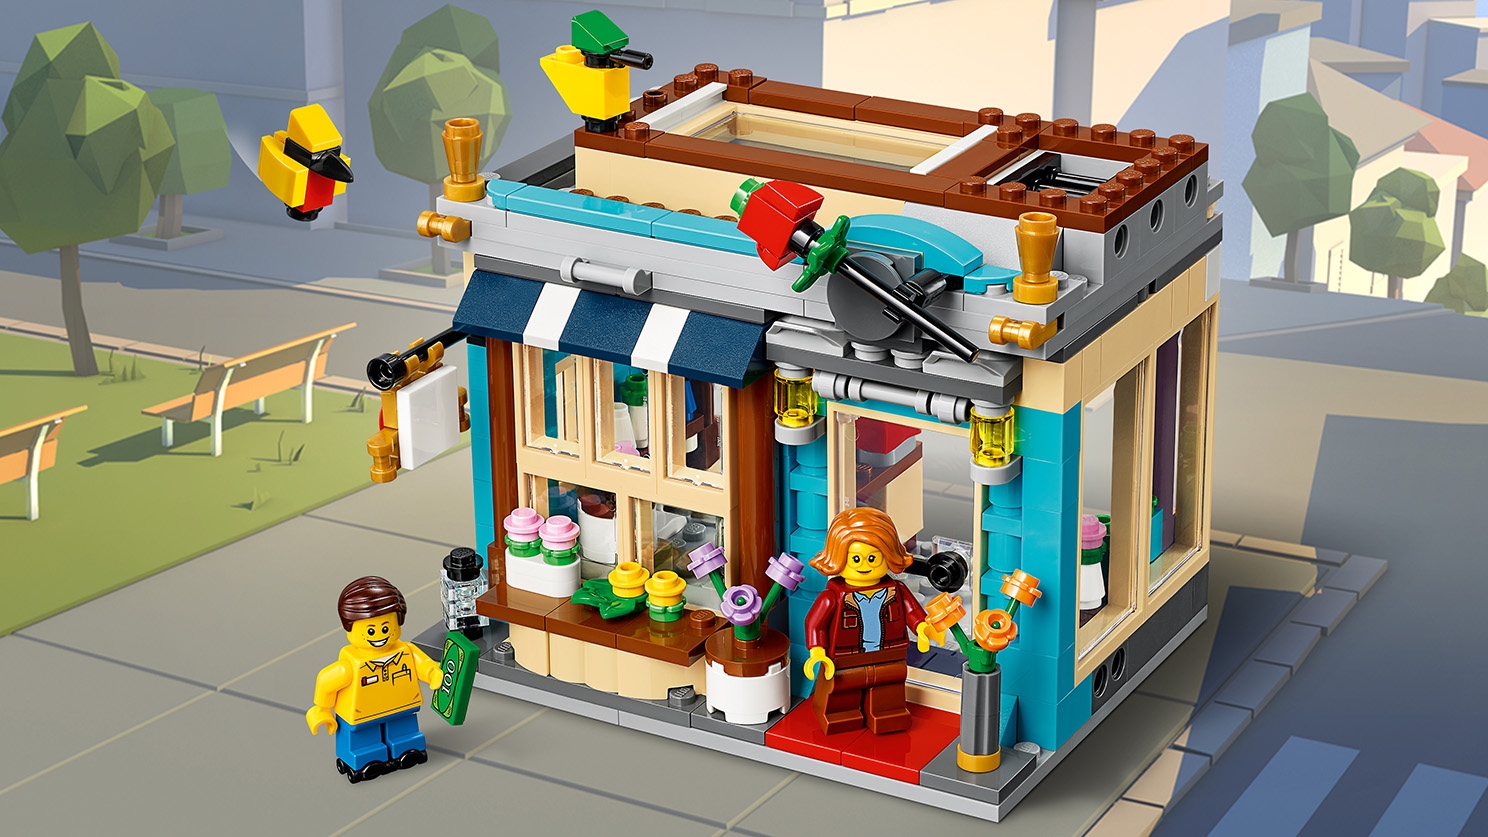 Byhus legetøjsbutik - LEGO® Creator sæt - LEGO.com børn